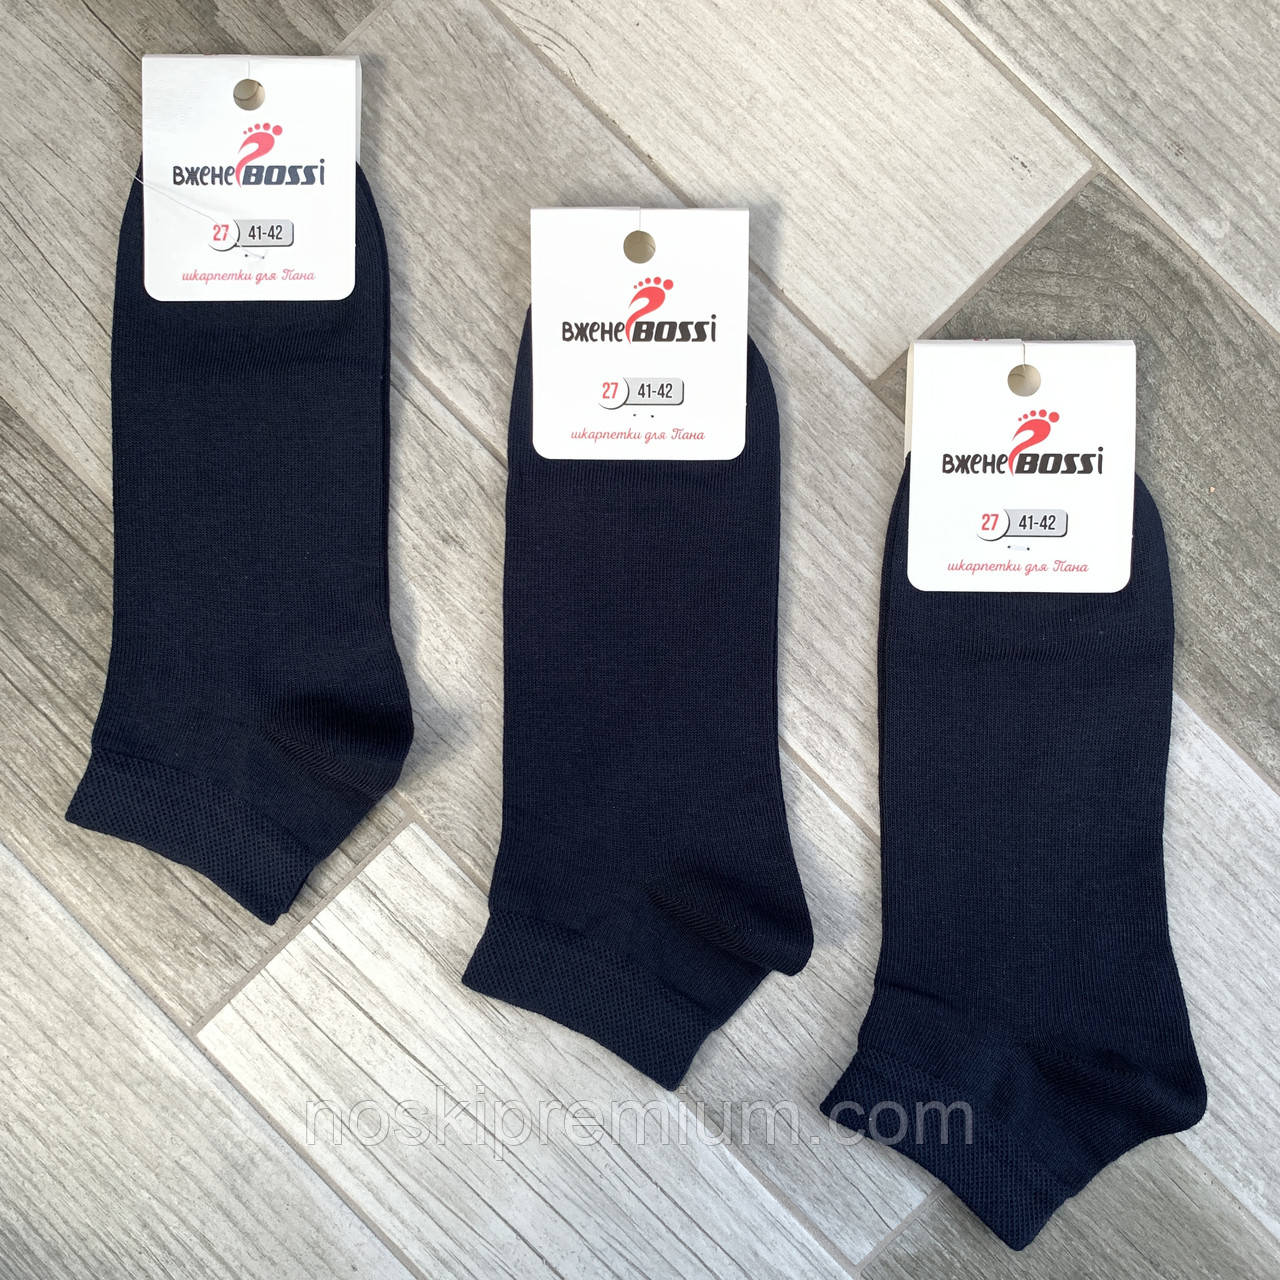 Шкарпетки чоловічі демісезонні бавовна короткі ВженеBOSSі, розмір 27 (41-42), темно-сині, 011018